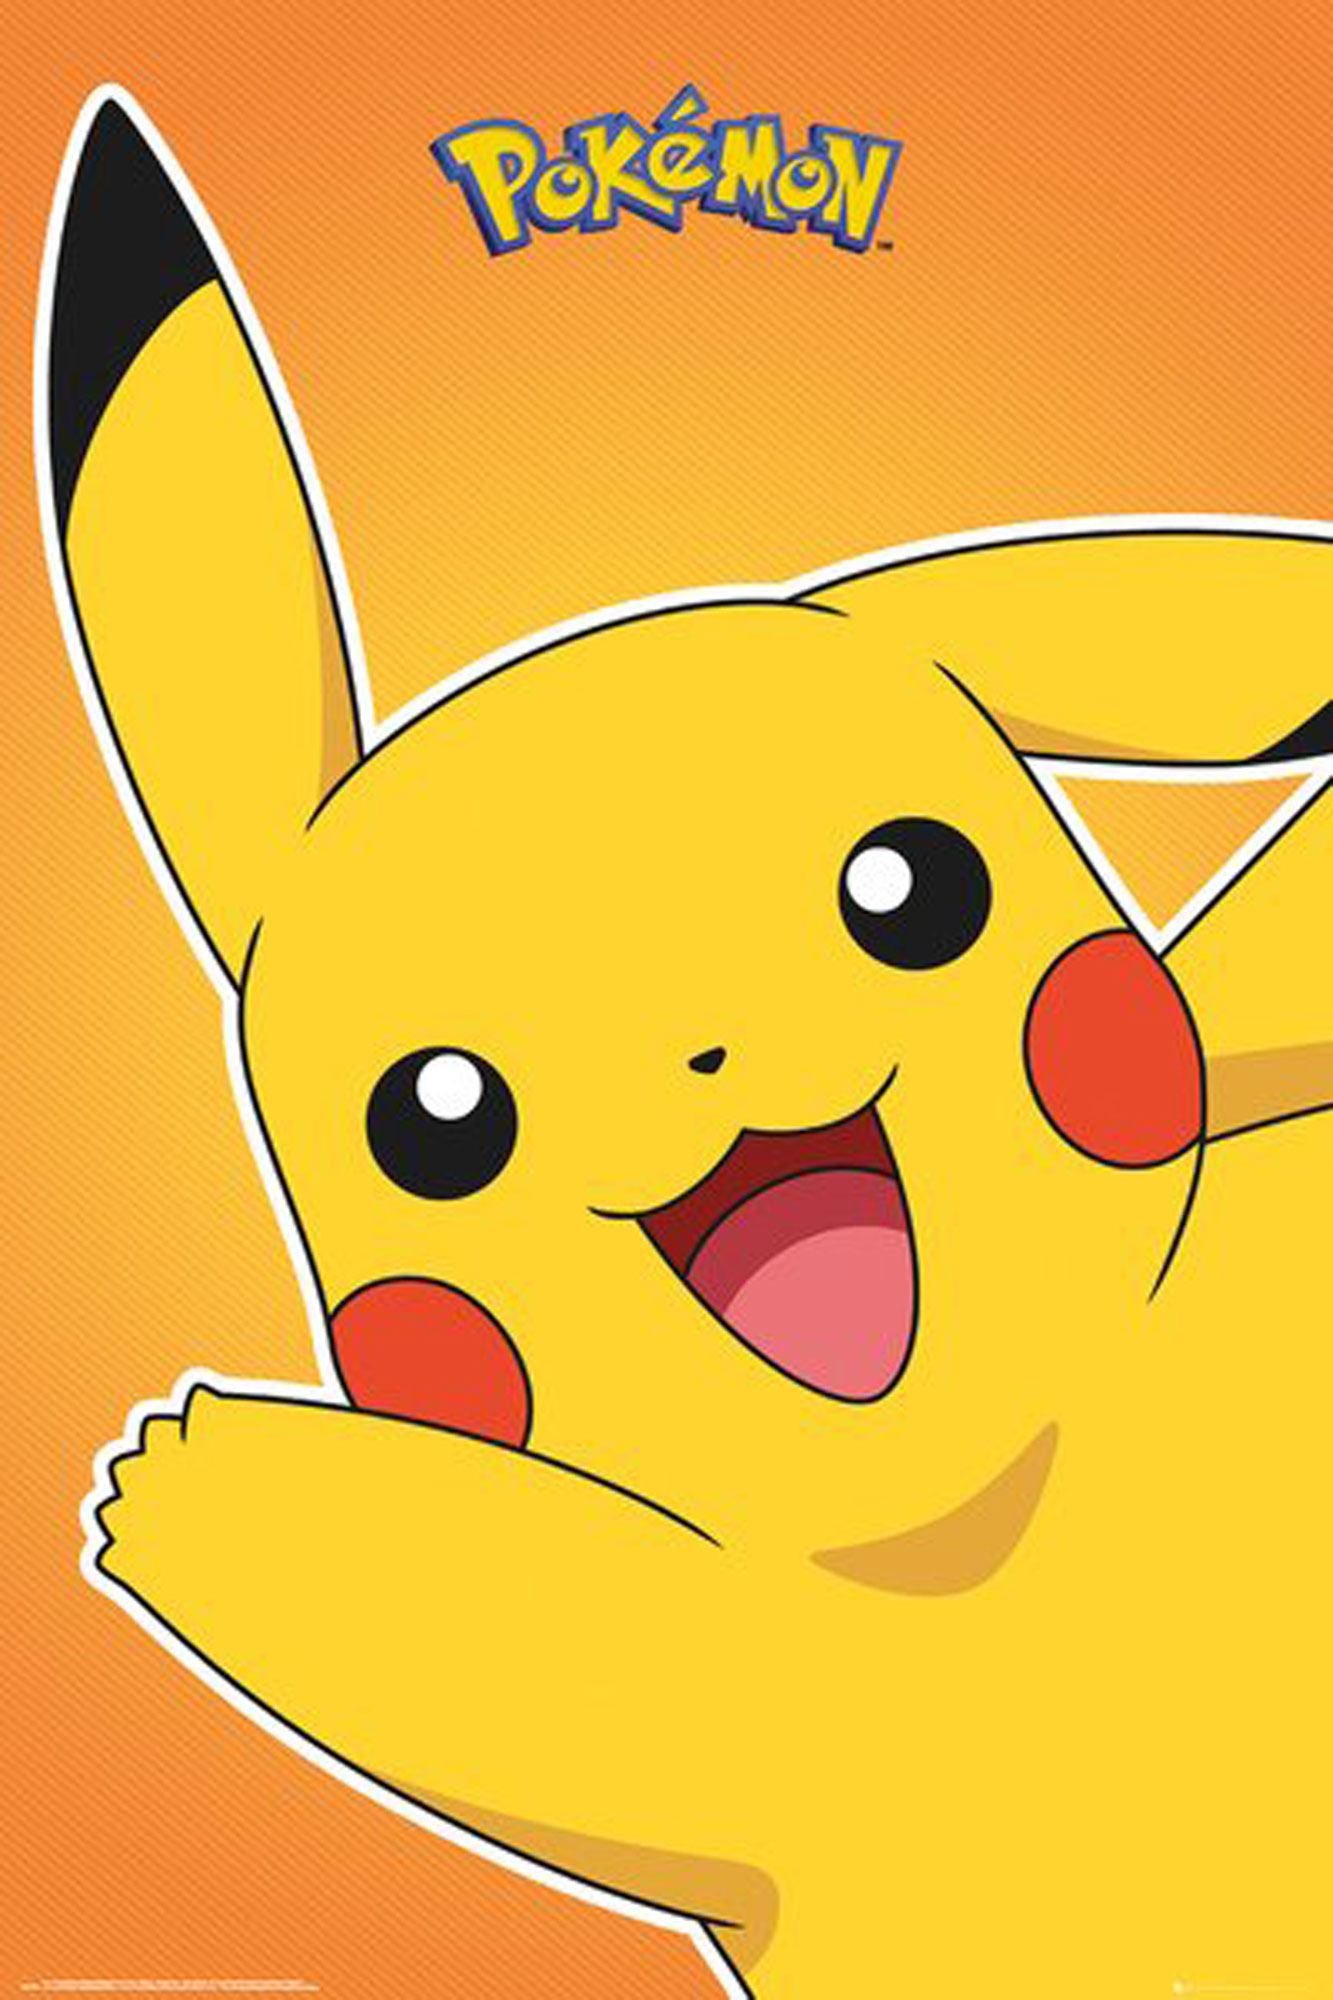 Pokémon - Pikachu - Motiv Pokemon 2